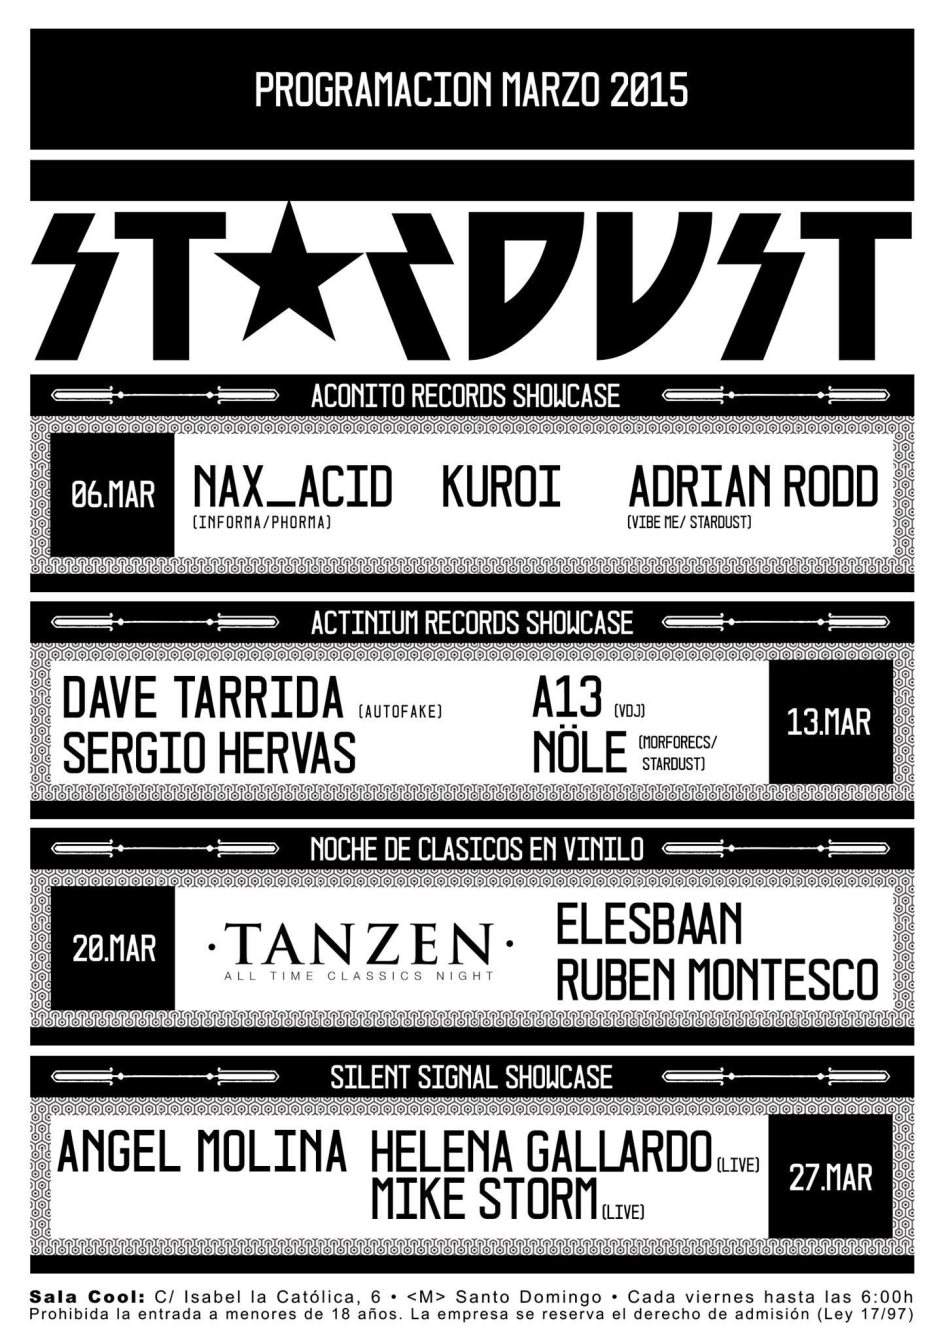 Stardust Club - Actinium Records Showcase - Página frontal